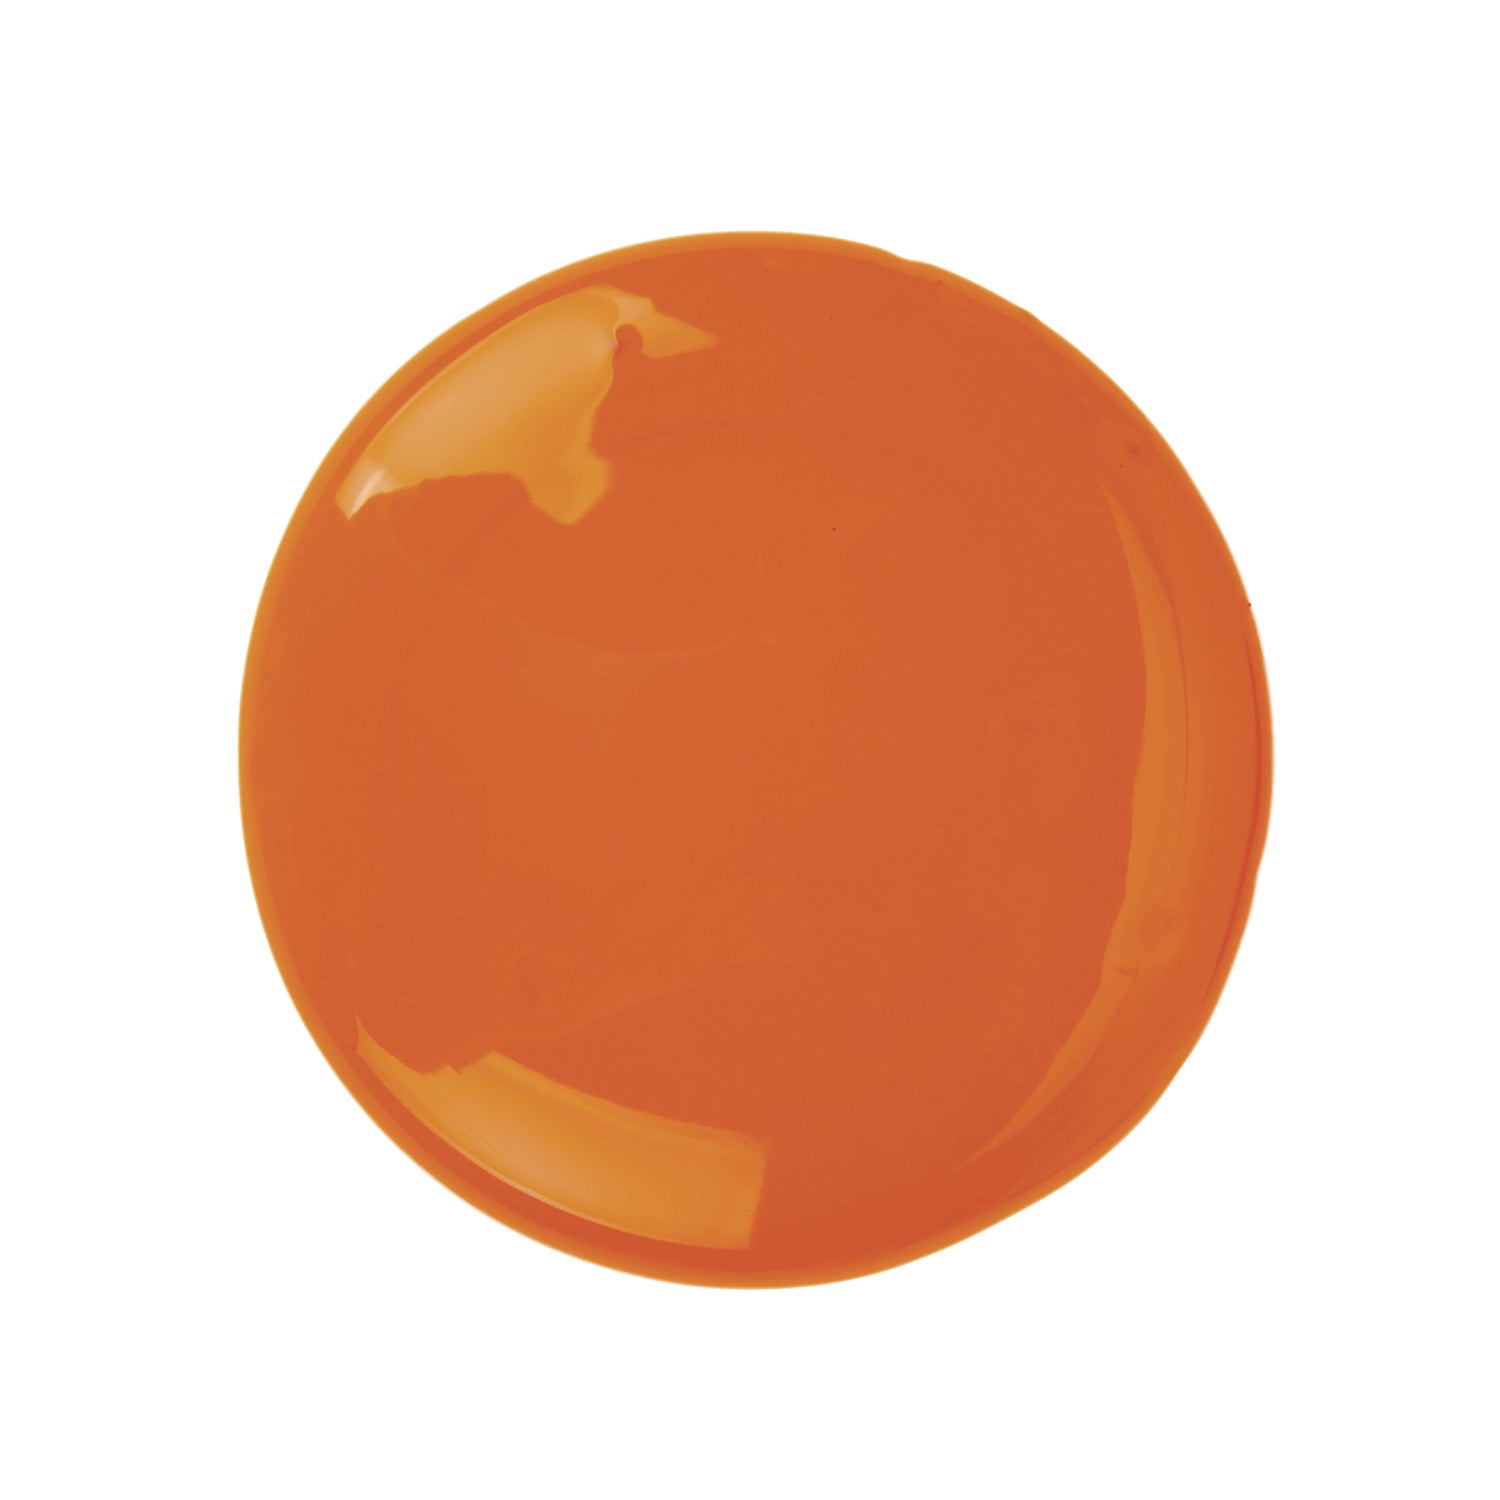 Washable Paint, Orange, 16 oz Bottle - 